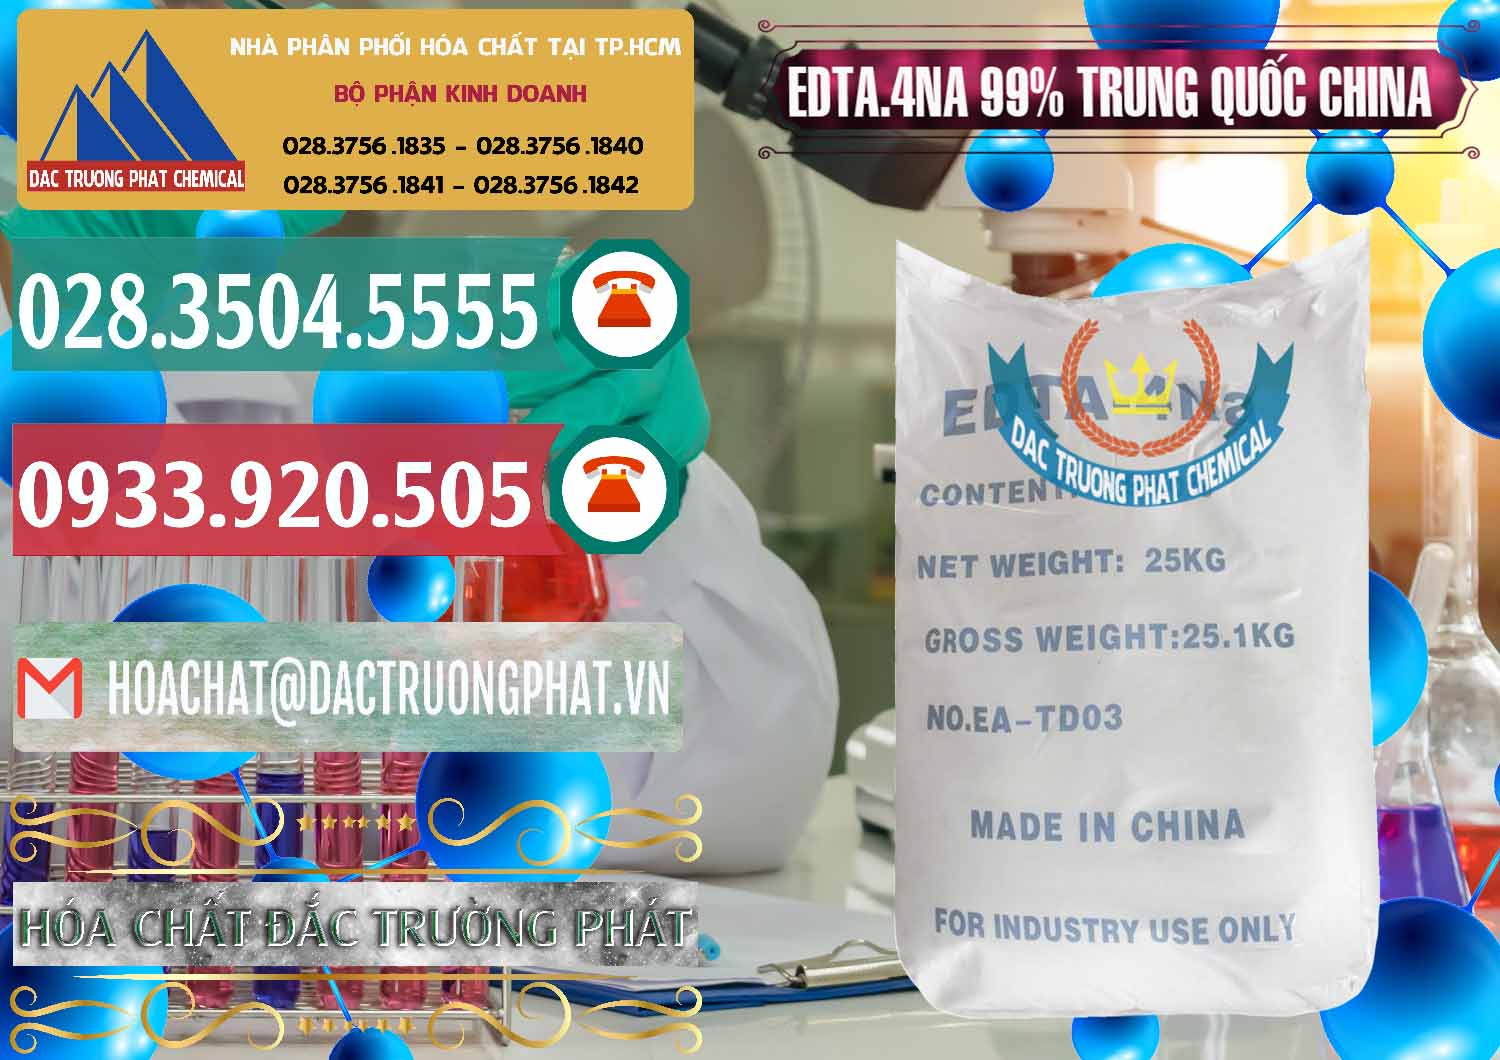 Đơn vị kinh doanh & bán EDTA.4NA - EDTA Muối 99% Trung Quốc China - 0292 - Nhà nhập khẩu và cung cấp hóa chất tại TP.HCM - muabanhoachat.vn